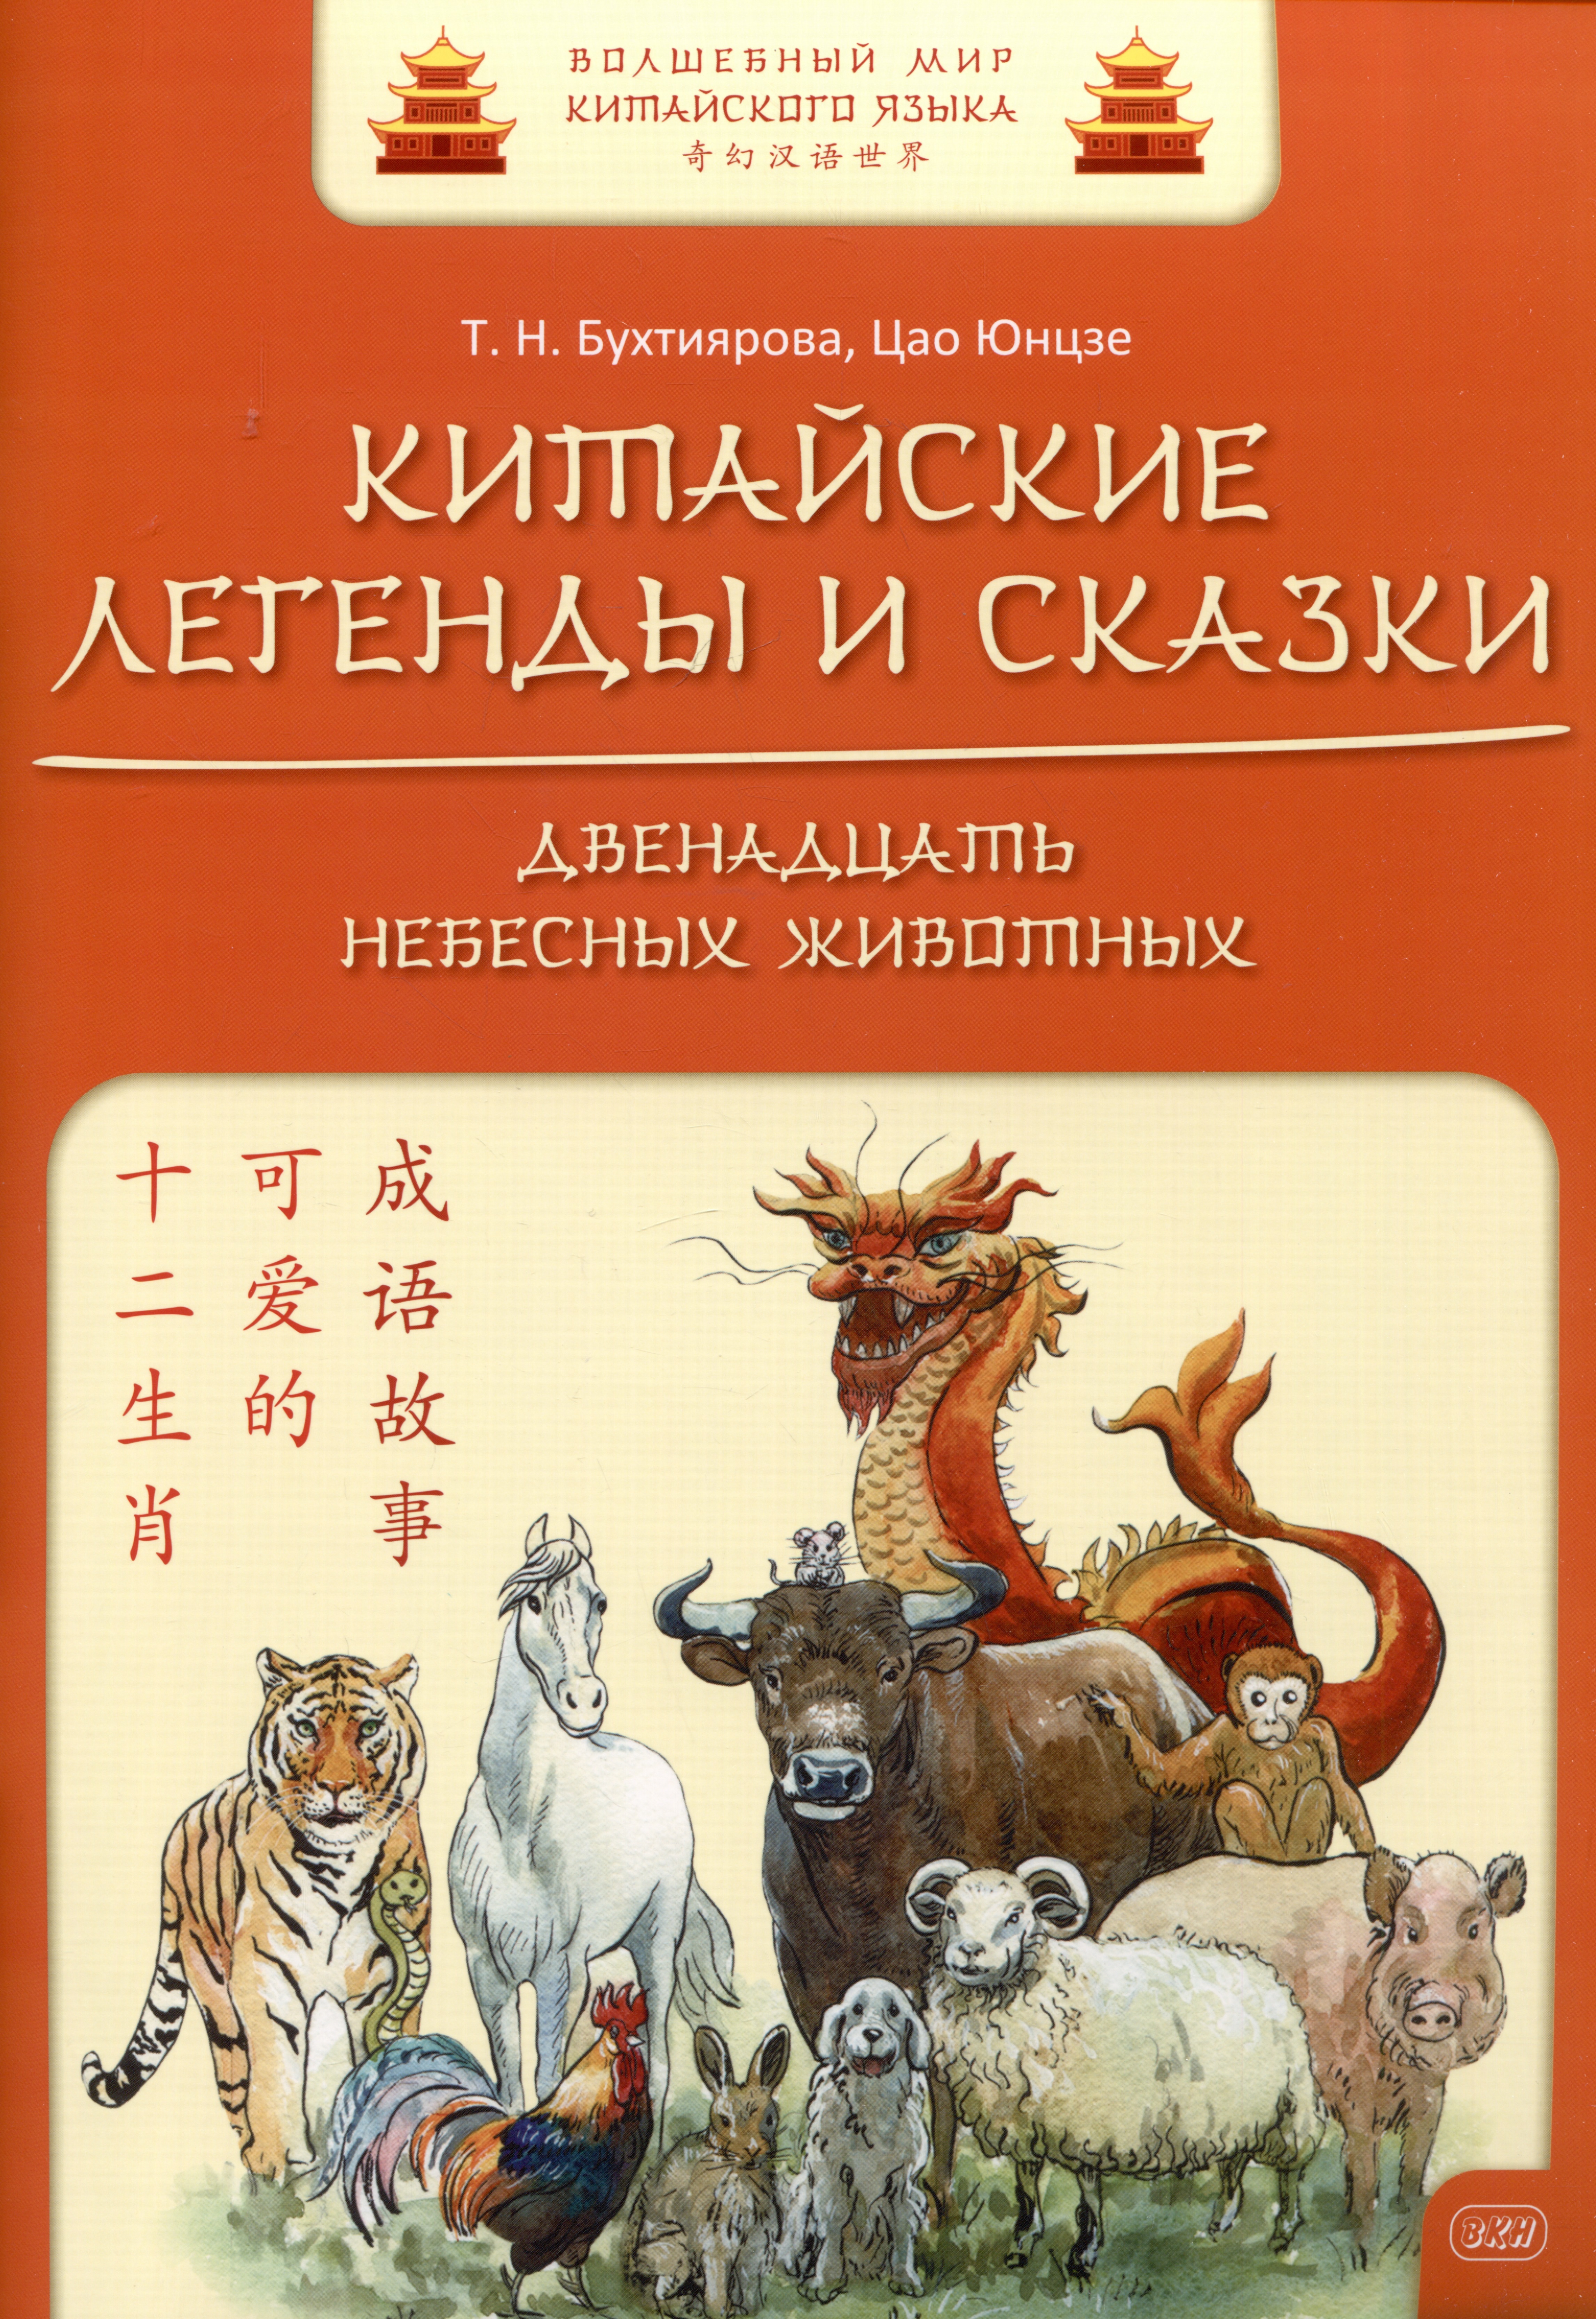 Китайские легенды и сказки. Двенадцать небесных животных: учебное пособие для начального уровня обучения